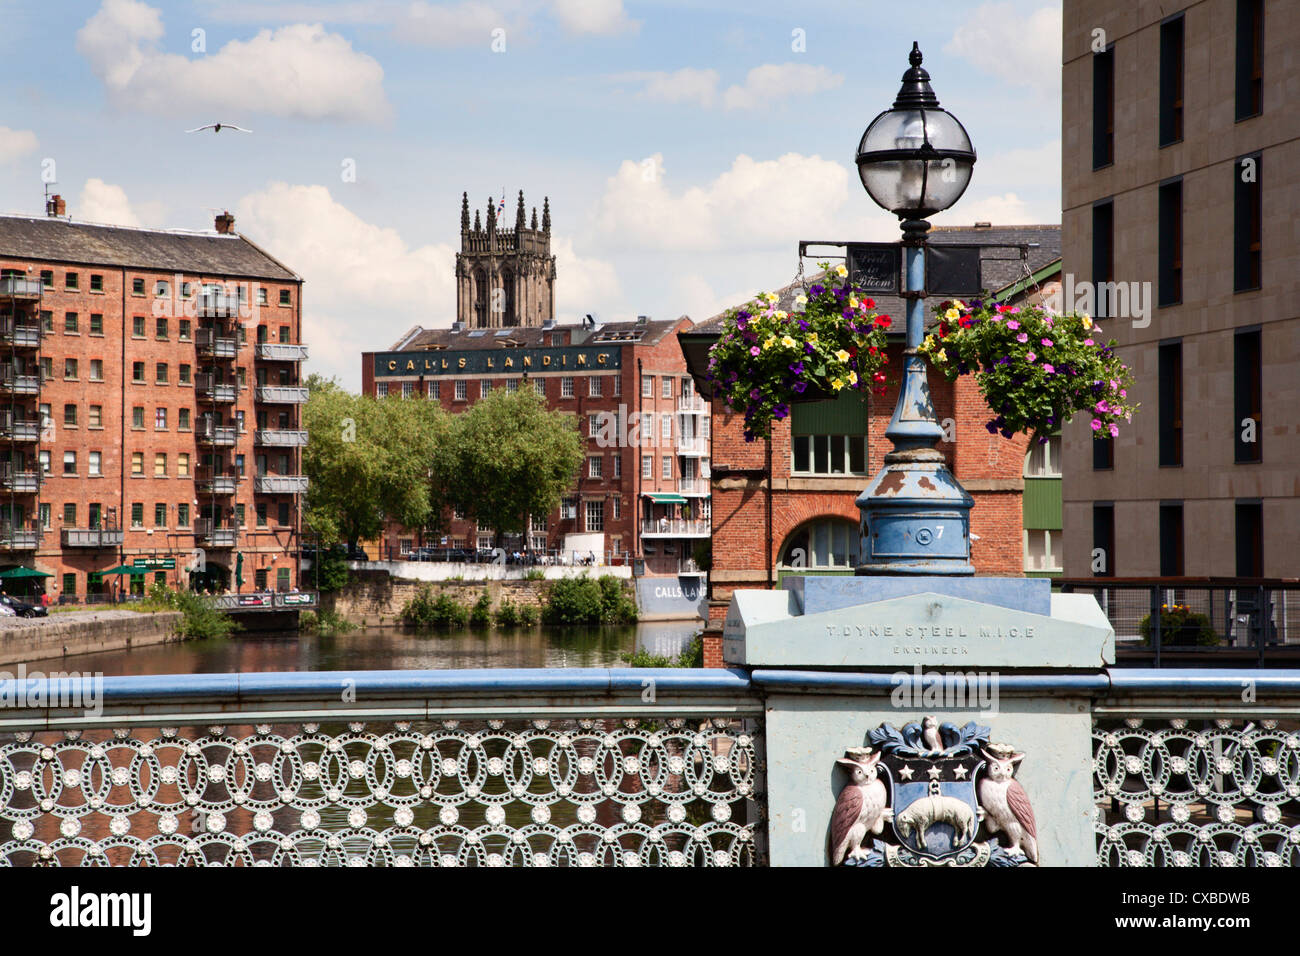 Ornate lamp on Leeds Bridge, Leeds, West Yorkshire, Yorkshire, England, United Kingdom, Europe Stock Photo